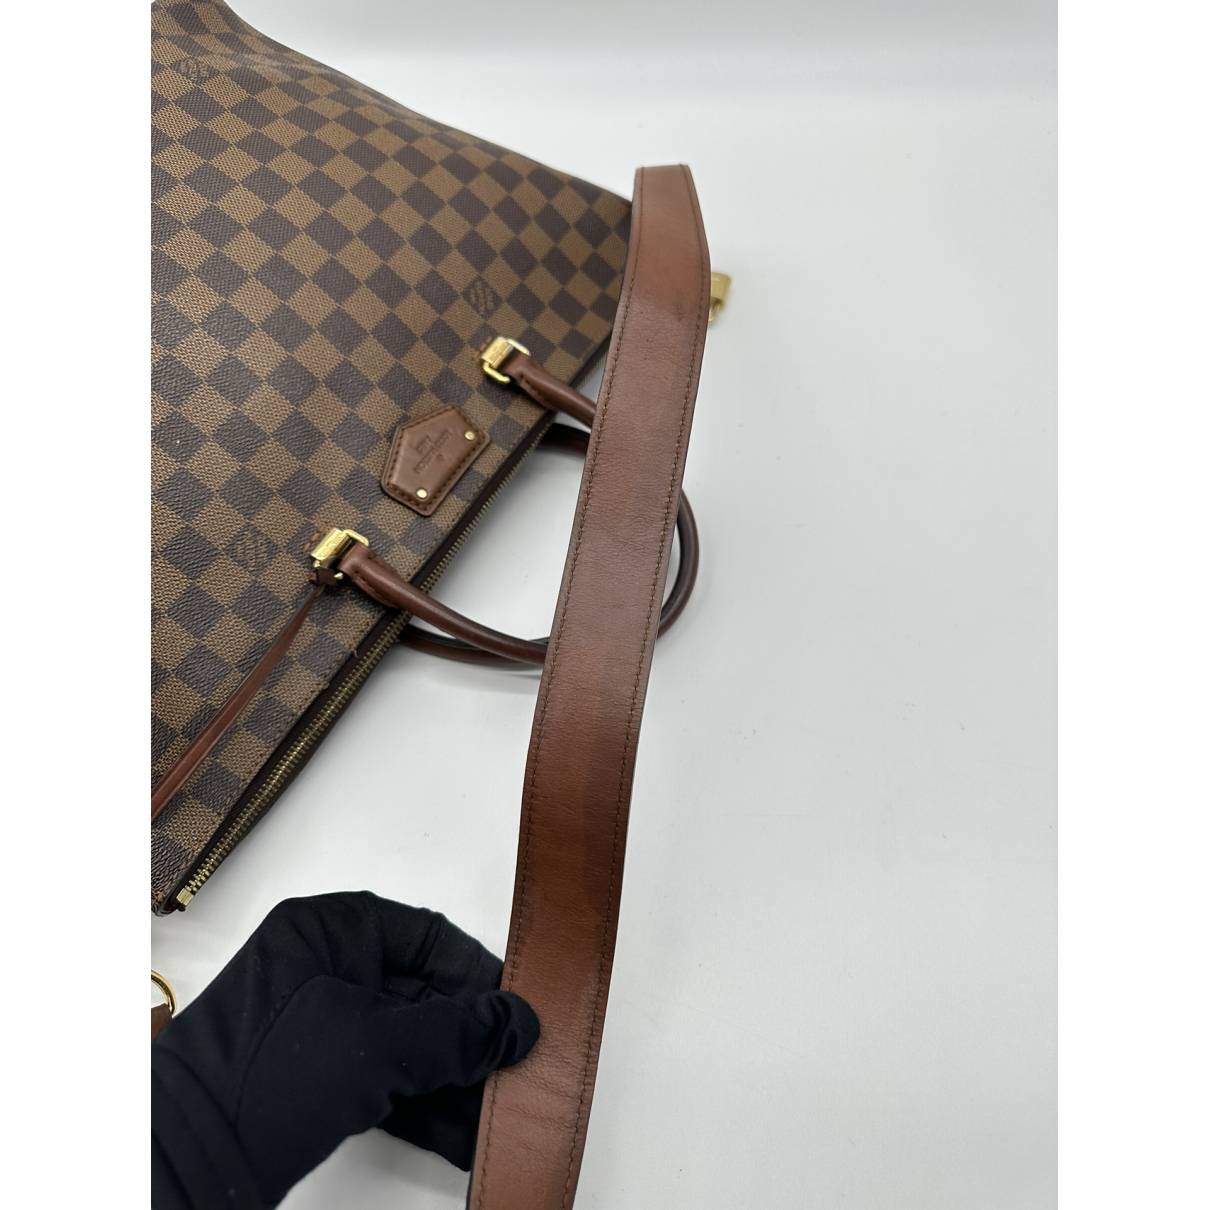 Louis Vuitton Damier Ebene Belmont Shoulder Bag